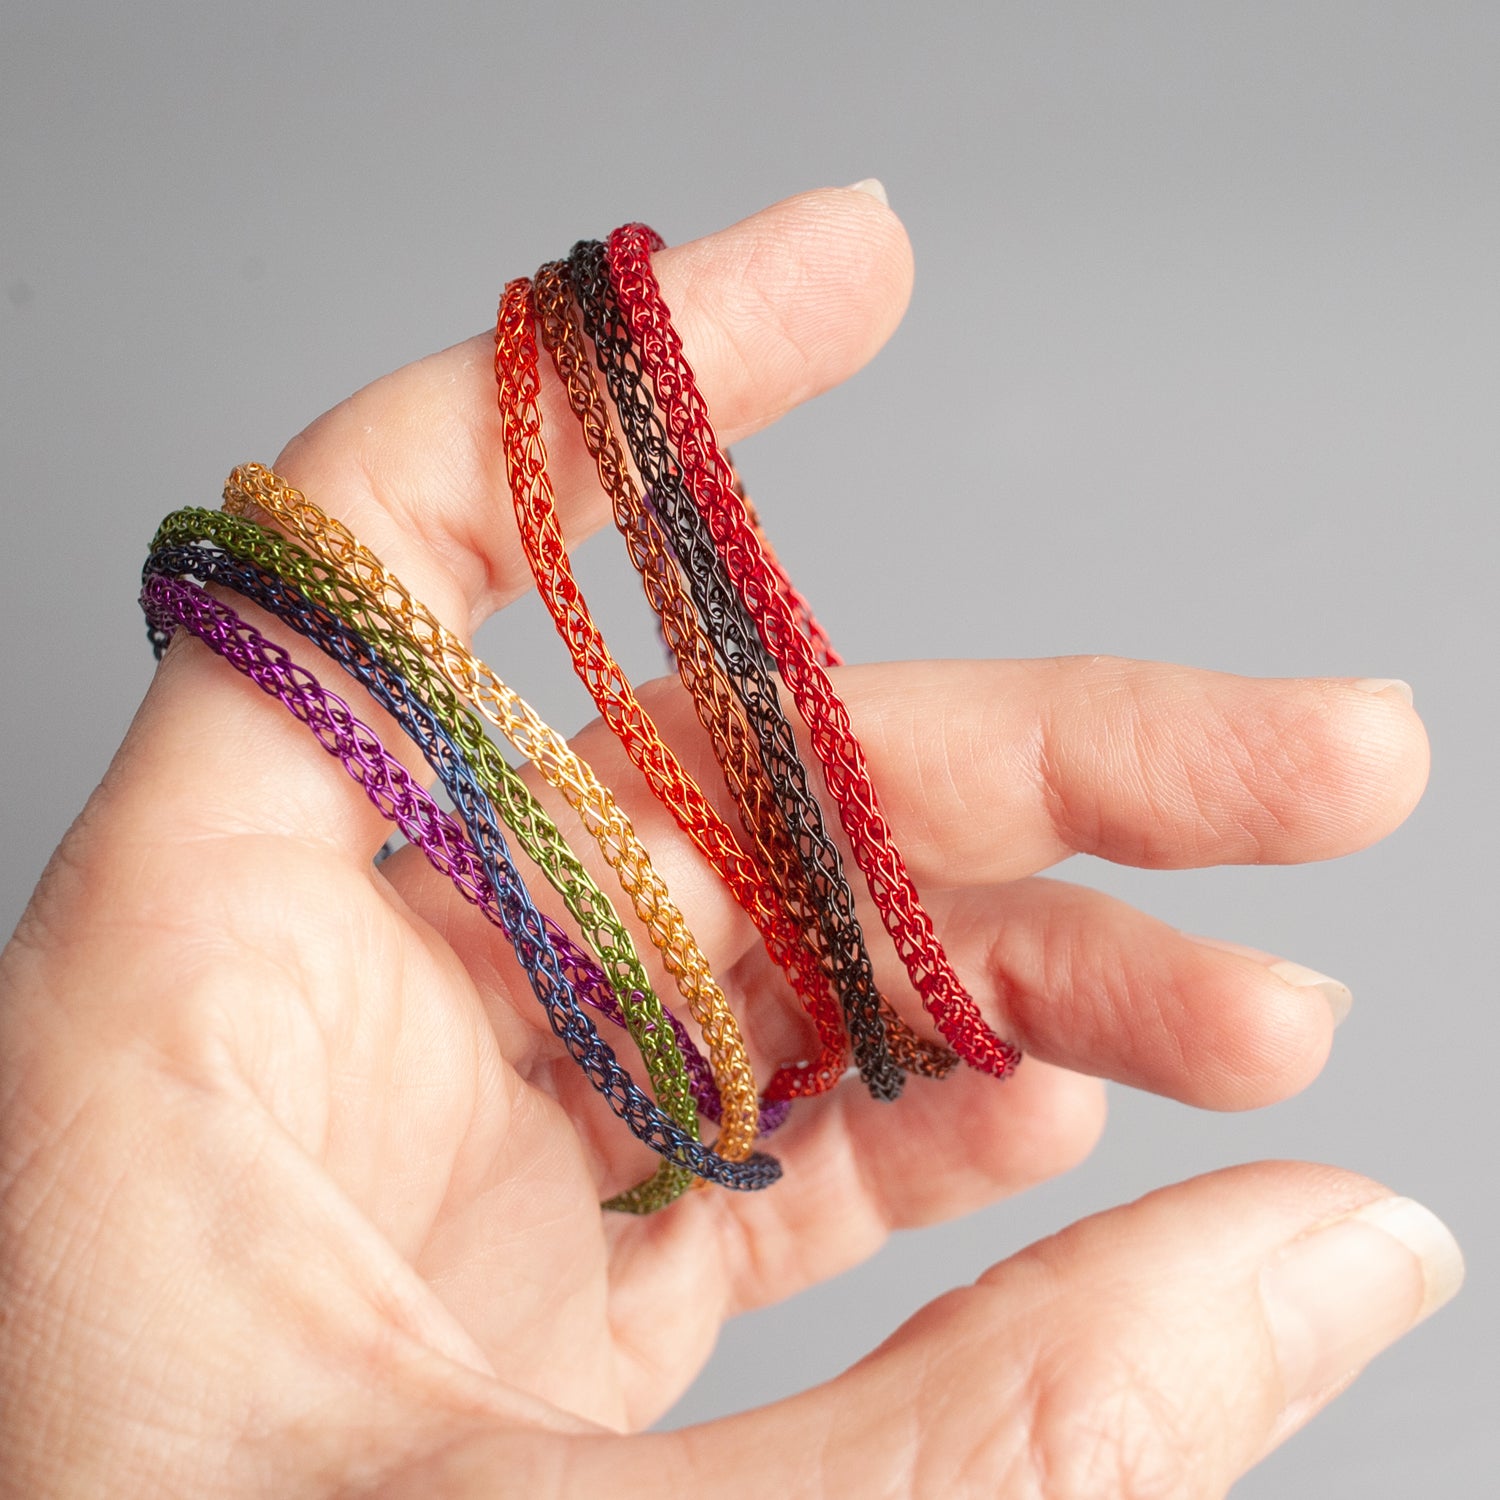 Crochet AF!: Linked Hearts Bracelet